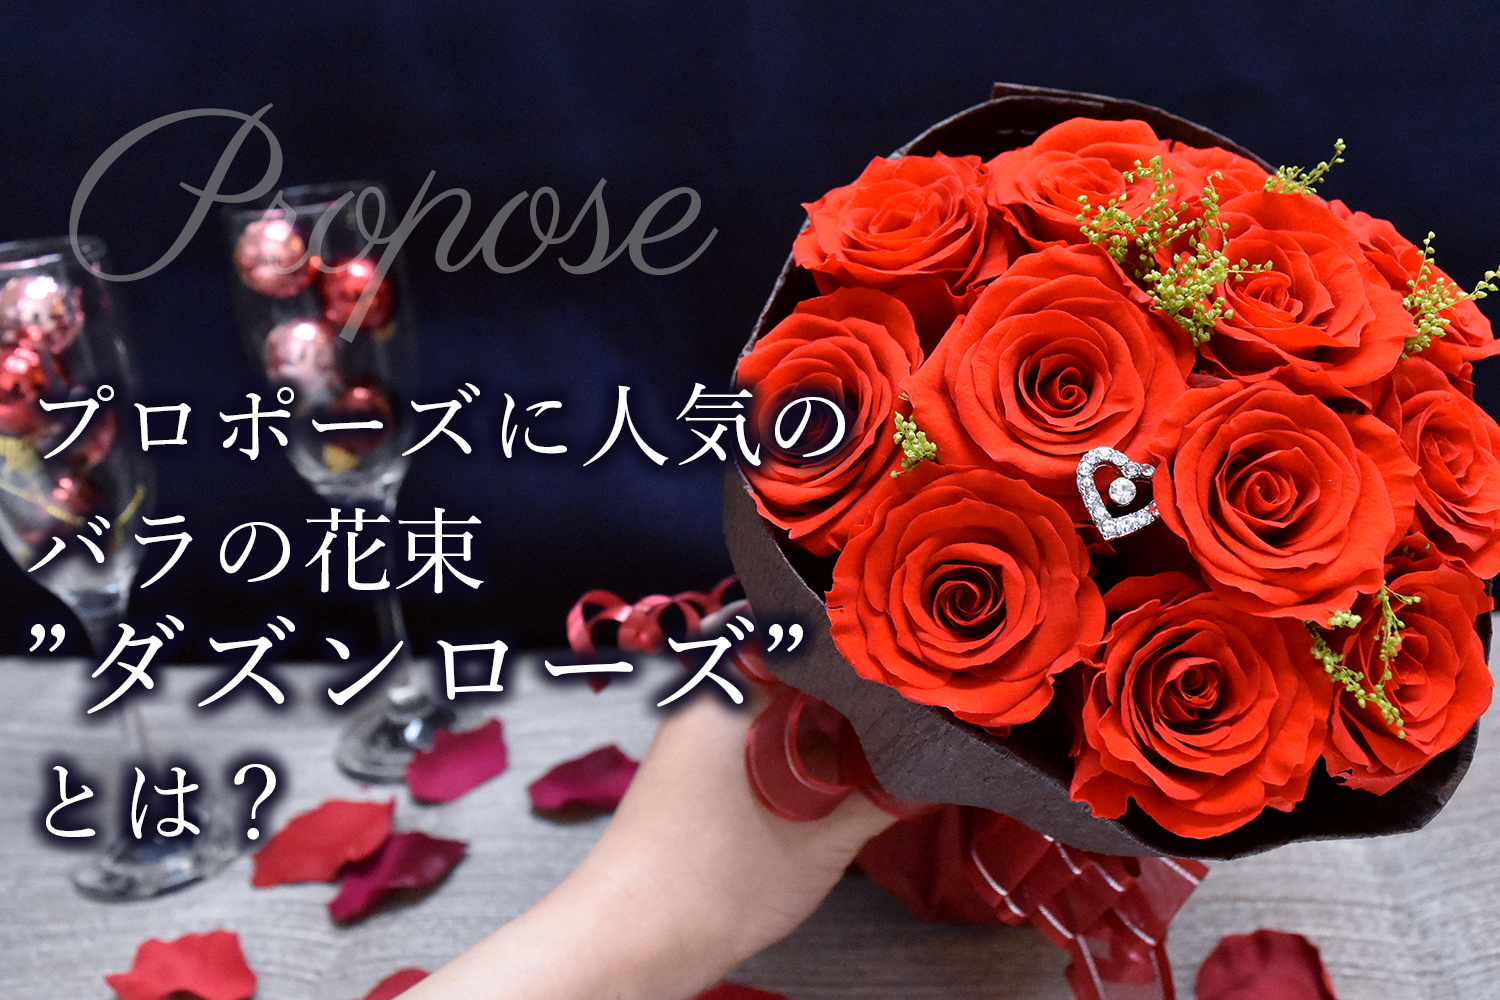 男性必見 プロポーズに人気のバラ花束 ダズンローズ とは 12の誓いの意味と購入できるお店をご紹介 プリザーブドフラワー専門通販サイトのフルールドゥマカロン